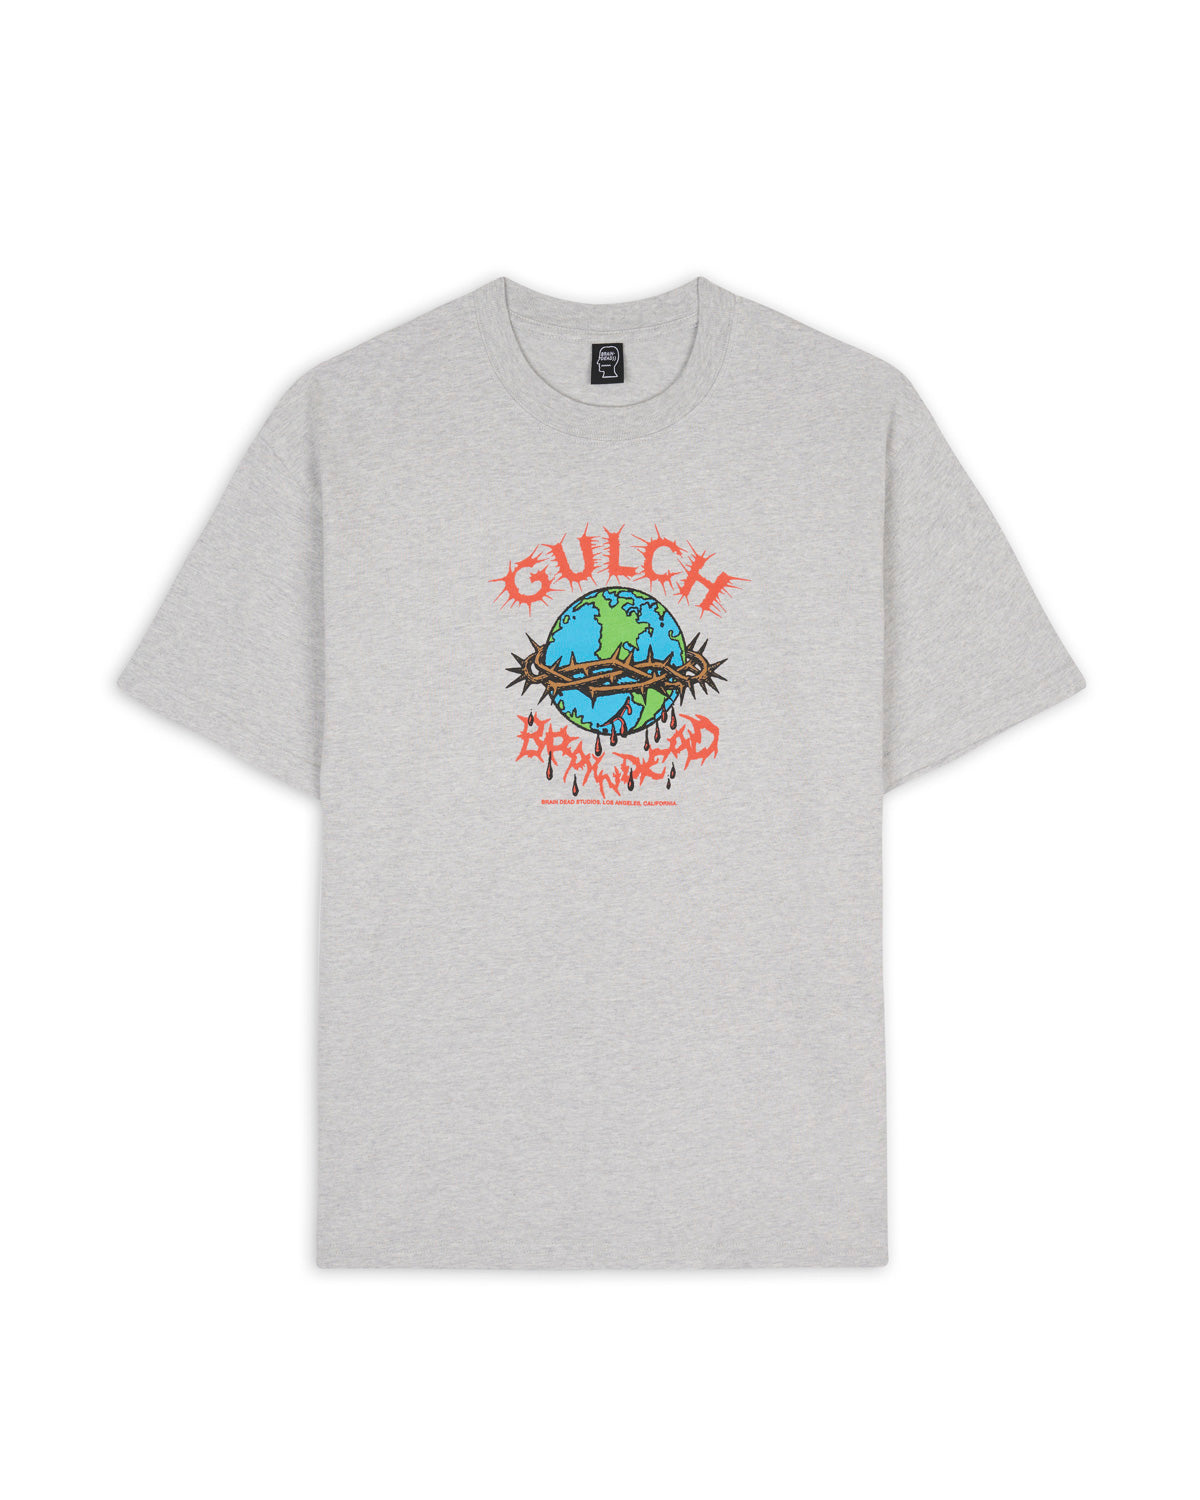 Gultch x Brain Dead Sound & Fury T-Shirt - Heather Grey 1